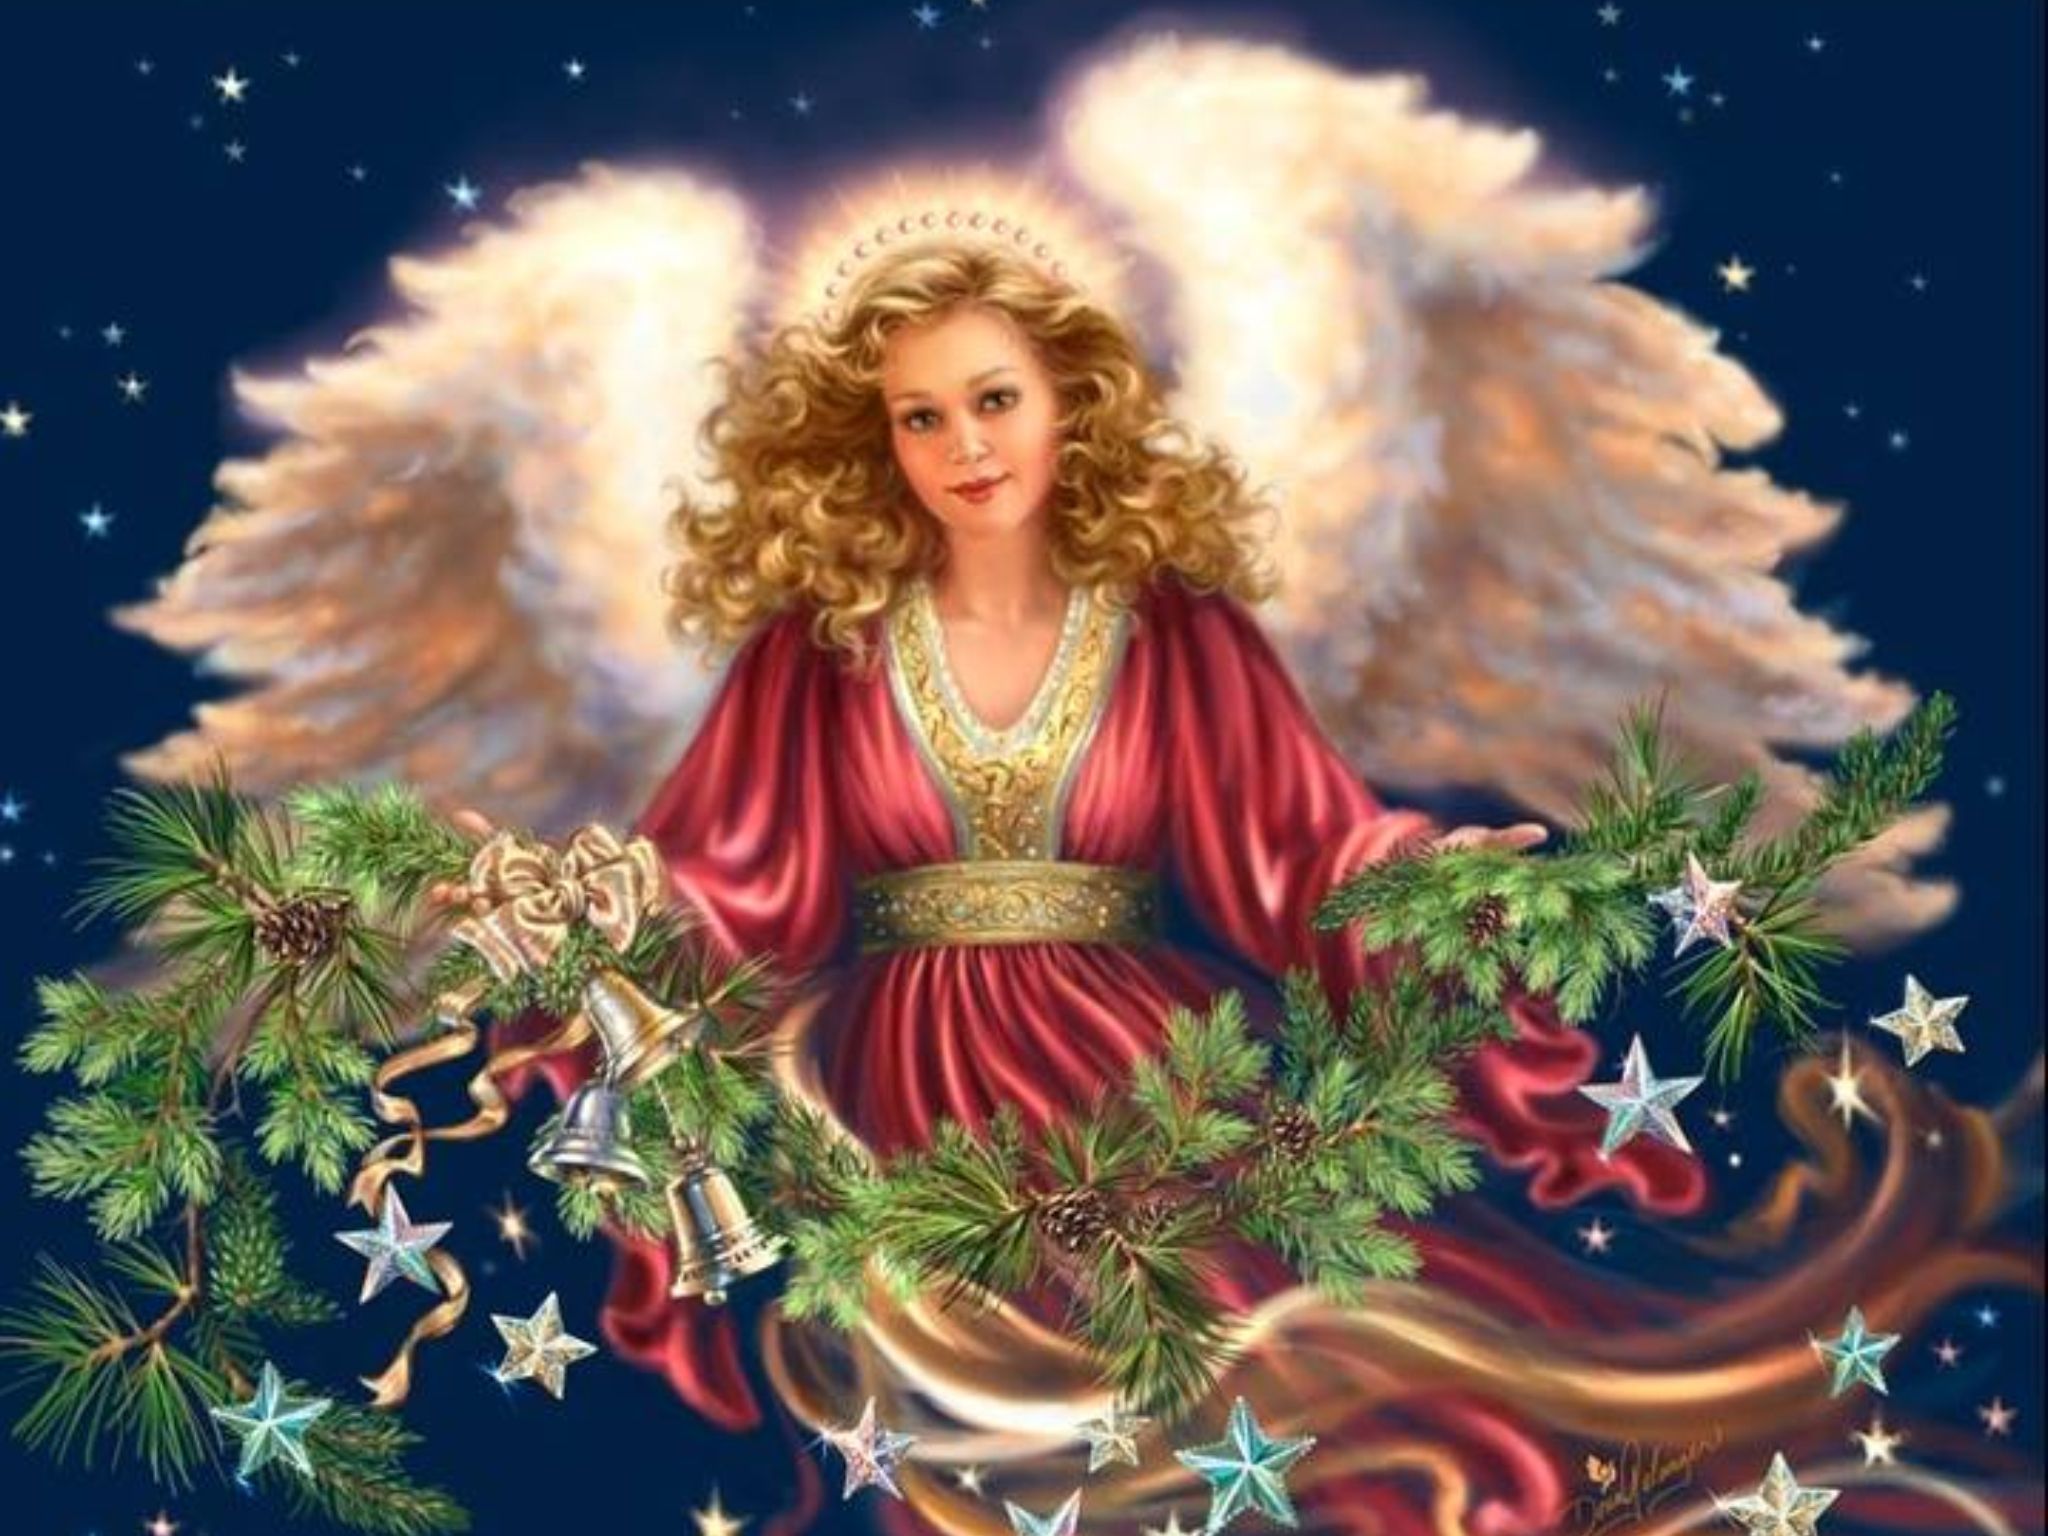 Christmas Angel ~ Dona Gelsinger, artist | Fantasy | Pinterest ...